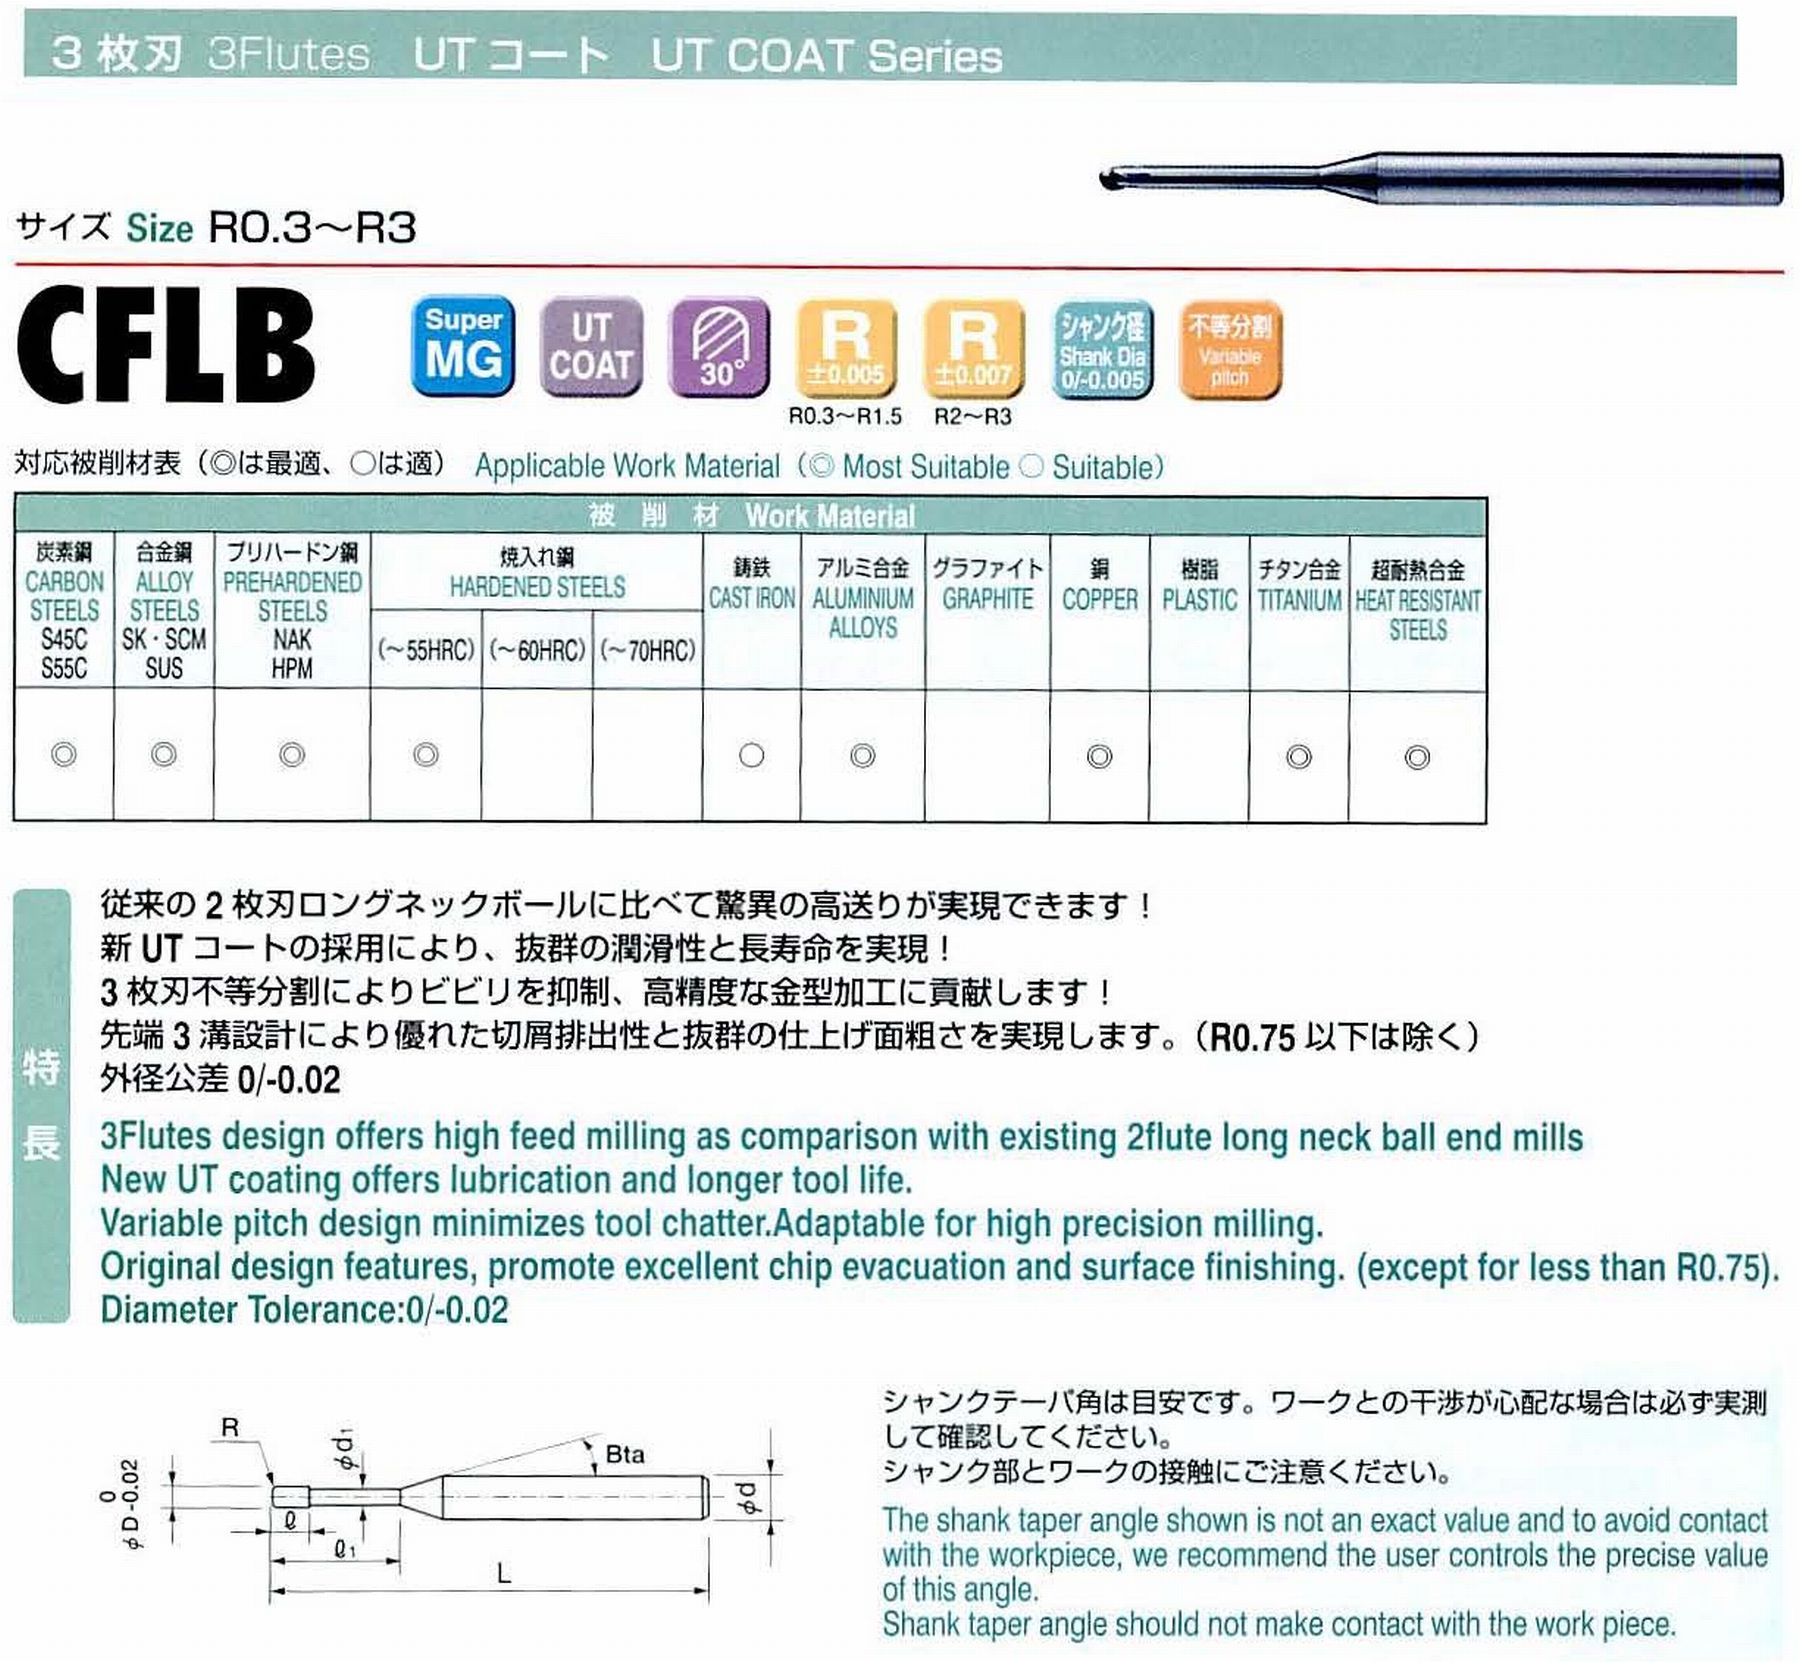 ユニオンツール 3枚刃 CFLB3060-400 ボール半径R3 有効長40 刃長4.8 首径5.42 シャンクテーパ角- 全長90 シャンク径6